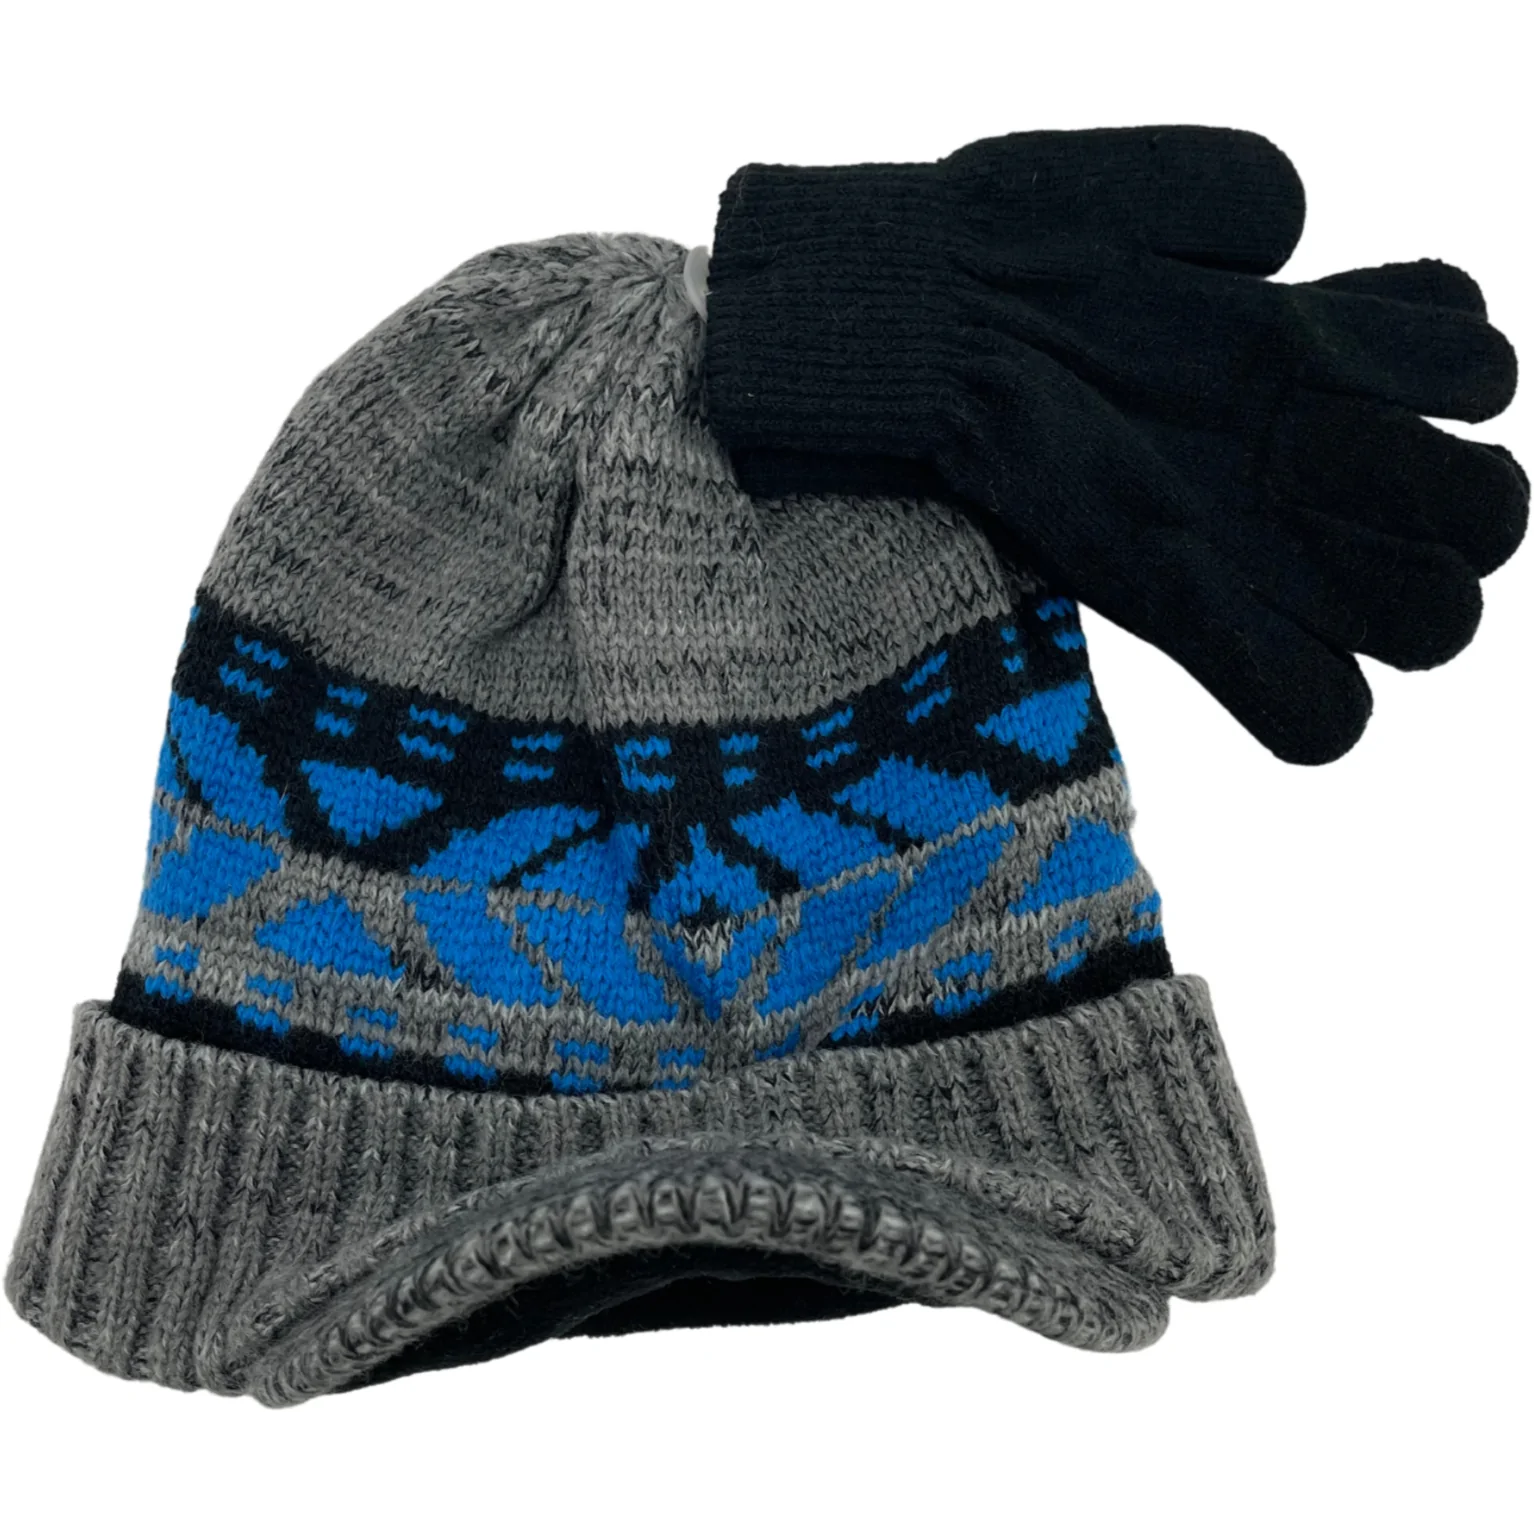 Children's Winter Hat & Glove Set / Blue, Black & Grey / Kid's Winter Toque / Size 8-20